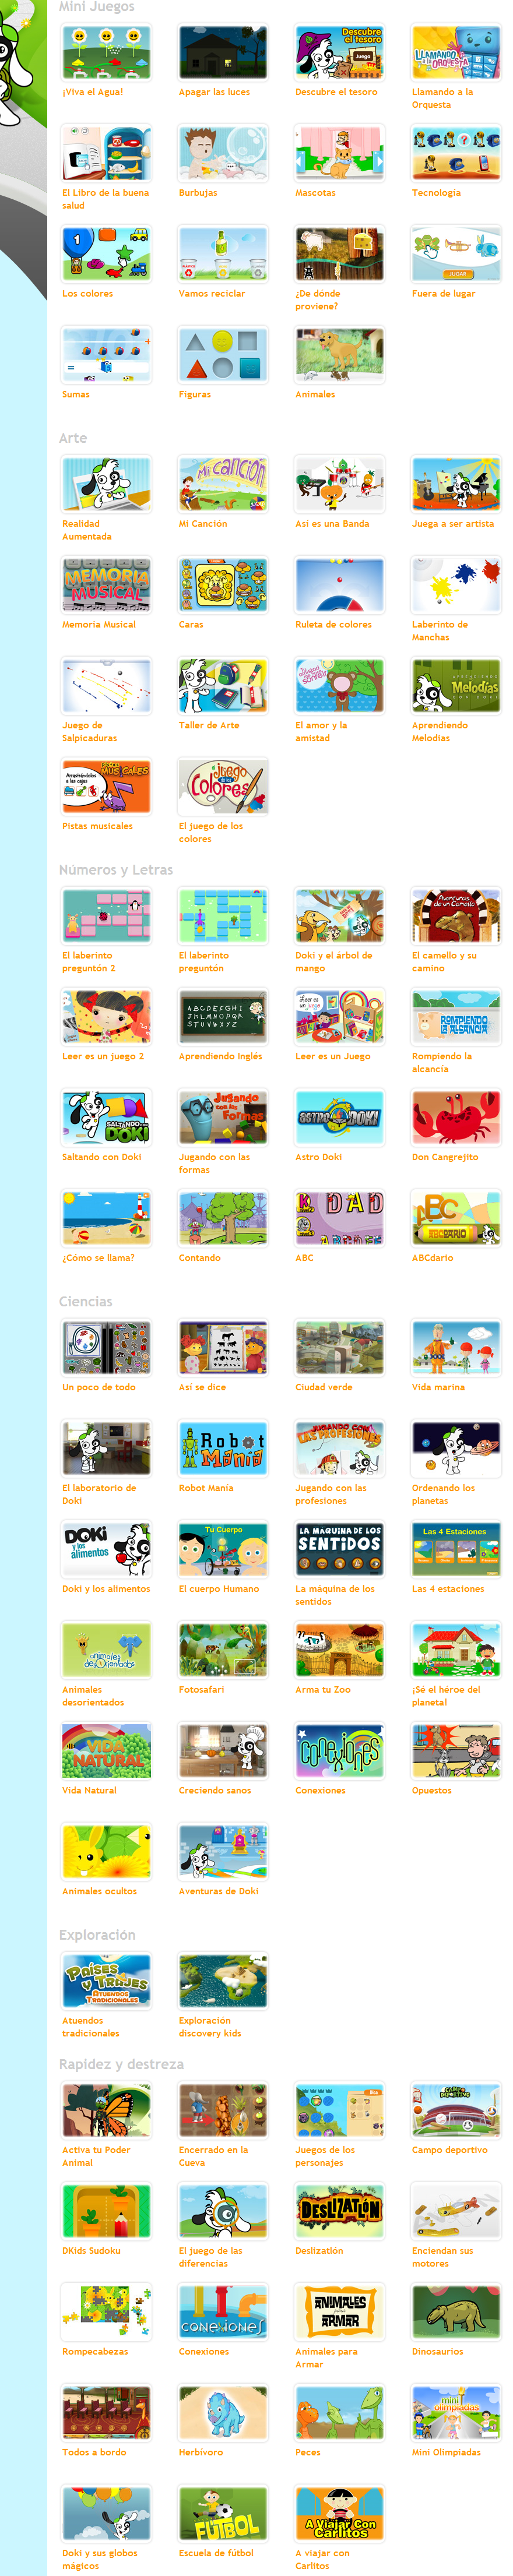 Juegos De Discovery Kids Antiguos : Los juegos educativos online de Discovery Kids para niños ...